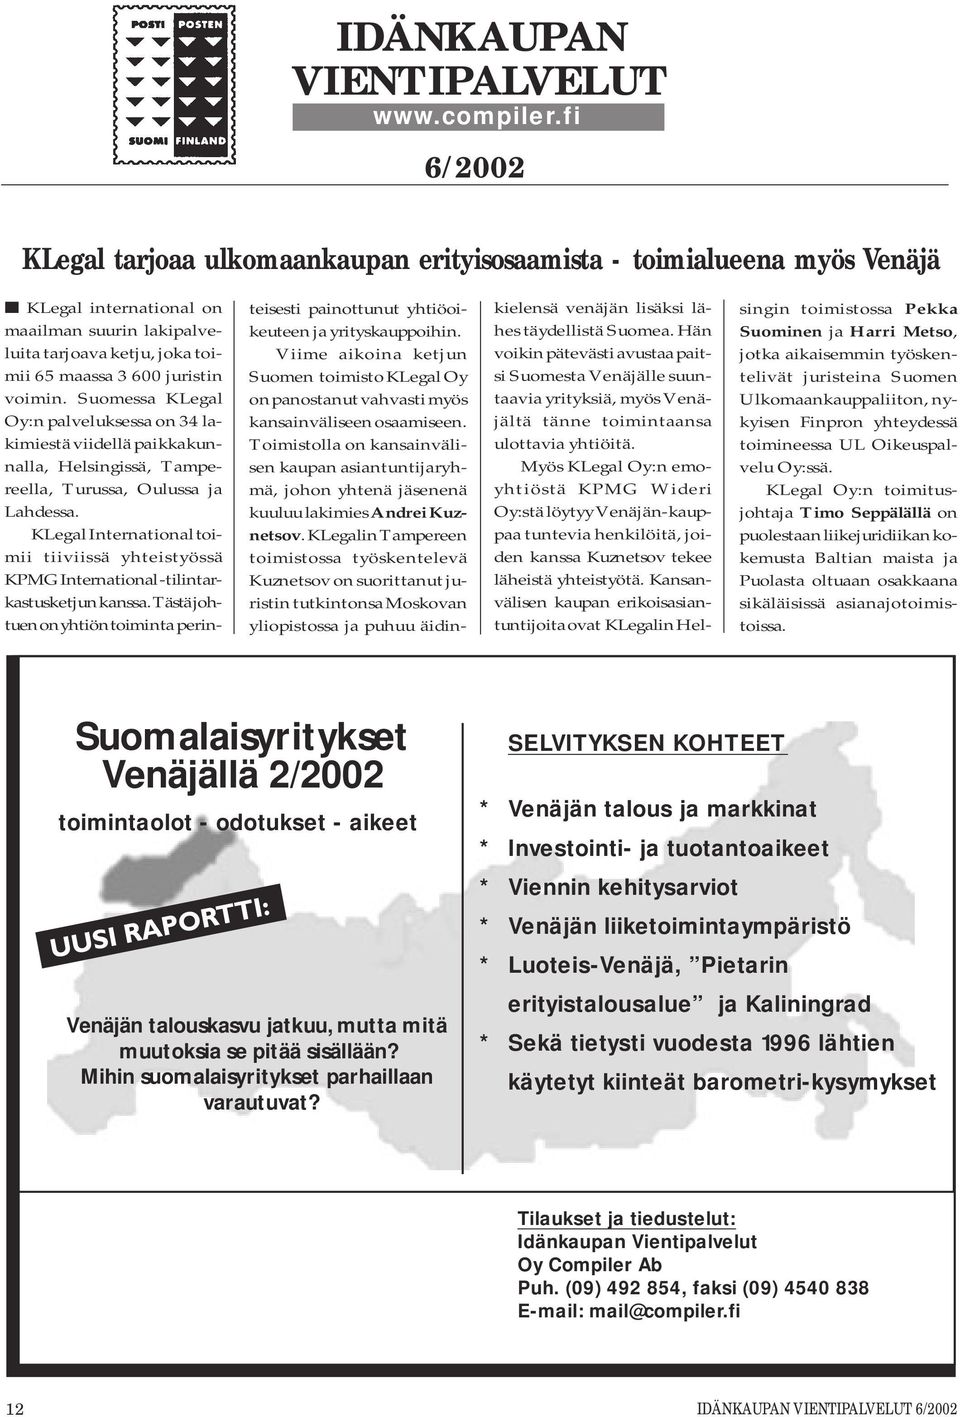 Suomessa KLegal Oy:n palveluksessa on 34 lakimiestä viidellä paikkakunnalla, Helsingissä, Tampereella, Turussa, Oulussa ja Lahdessa.